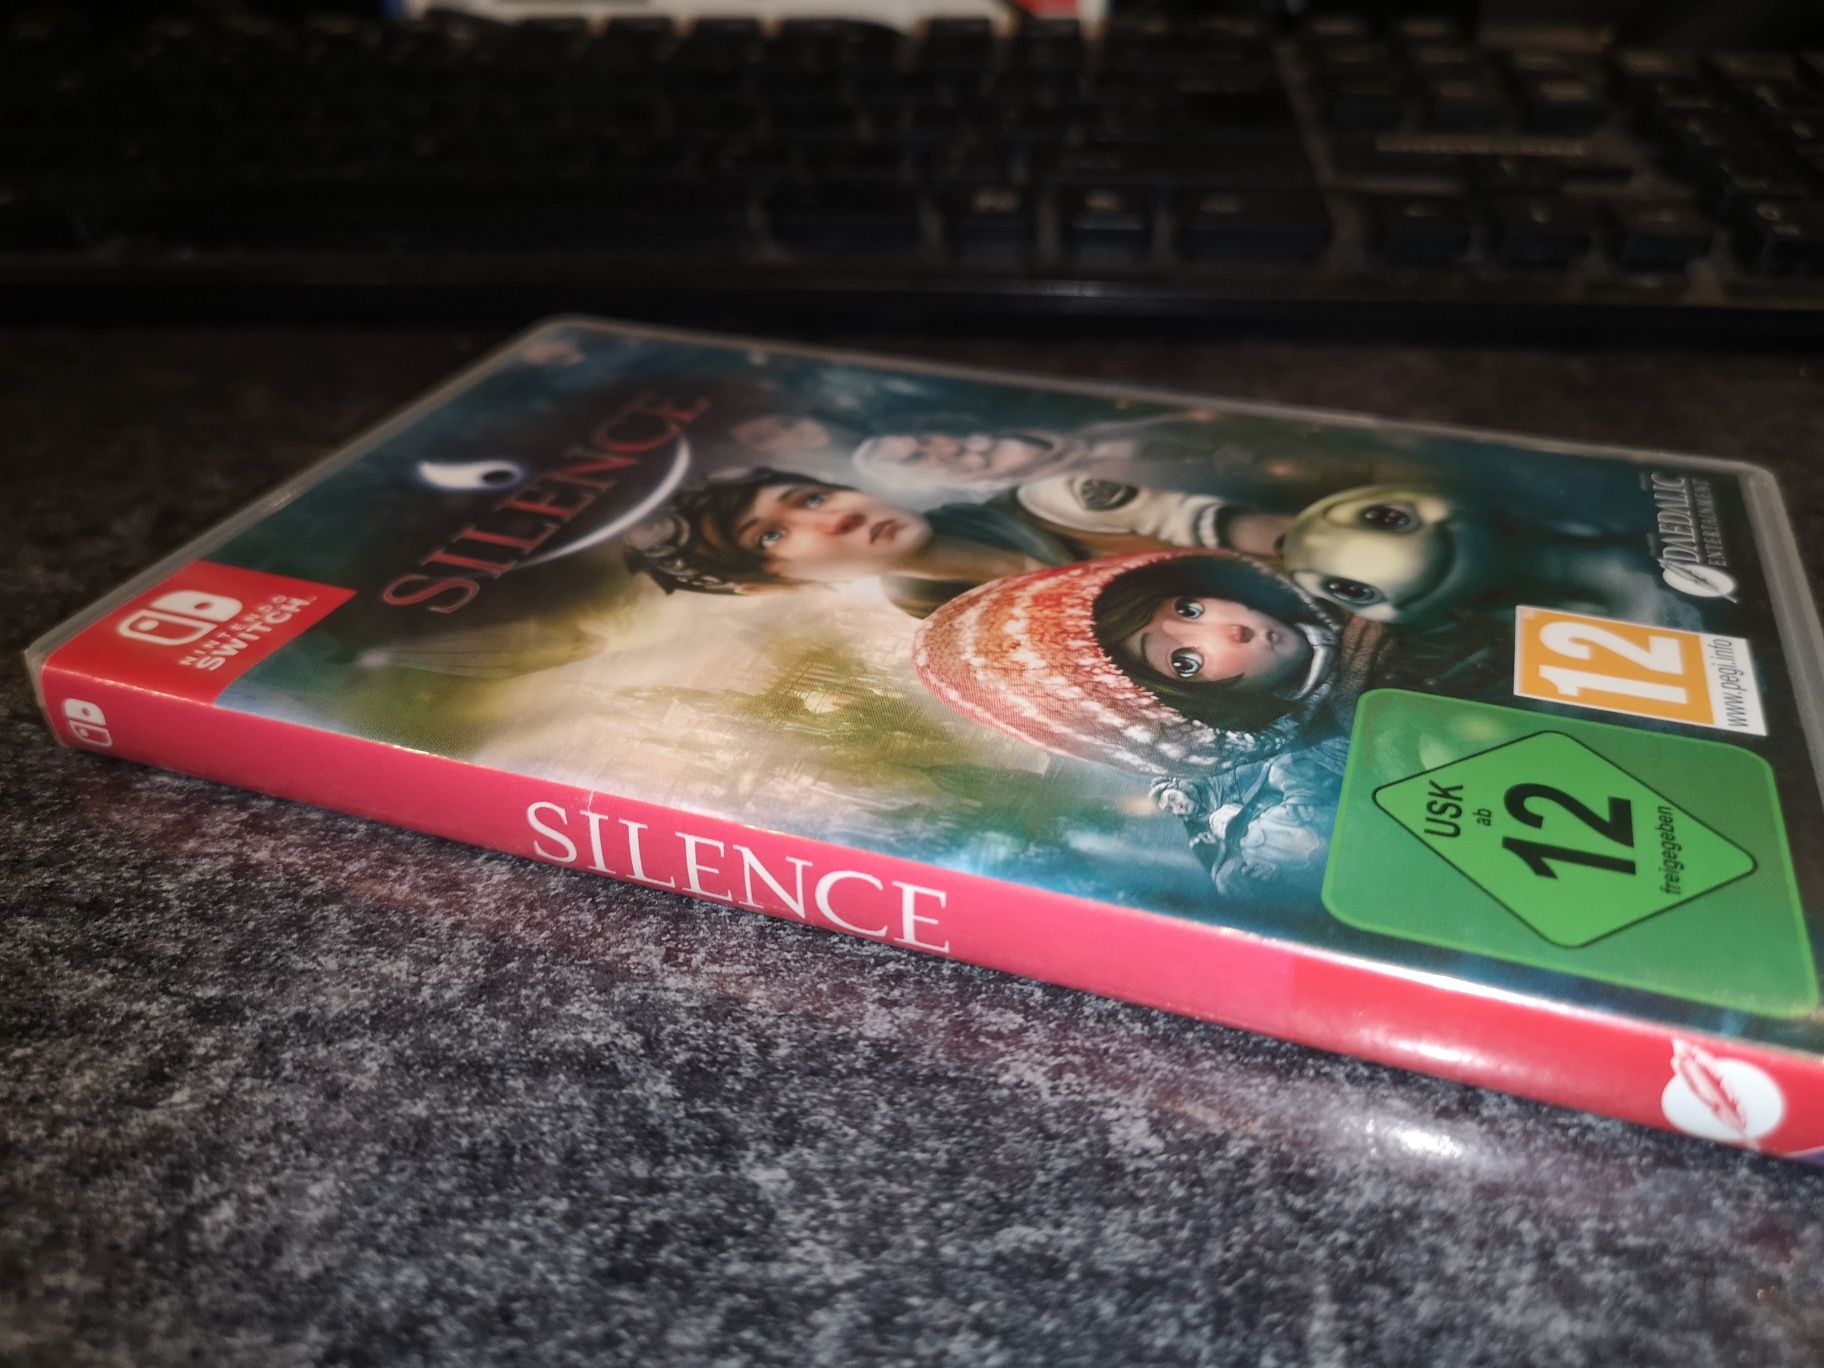 Silence SWITCH Nintendo gra PL (rzadkość na rynku) kioskzgrami Ursus